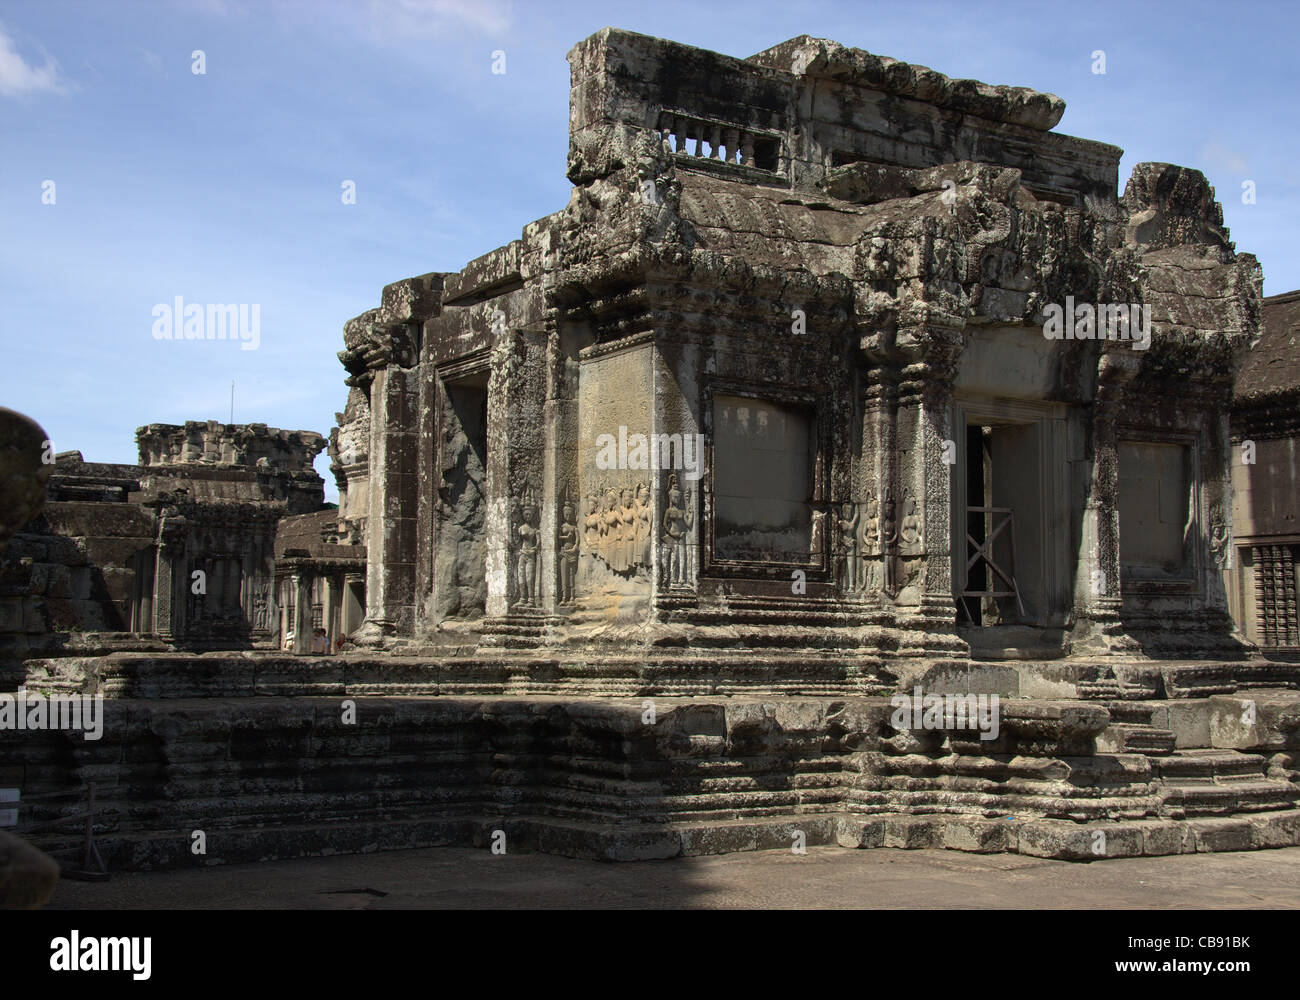 Los edificios del templo de Angkor Wat, Camboya Foto de stock